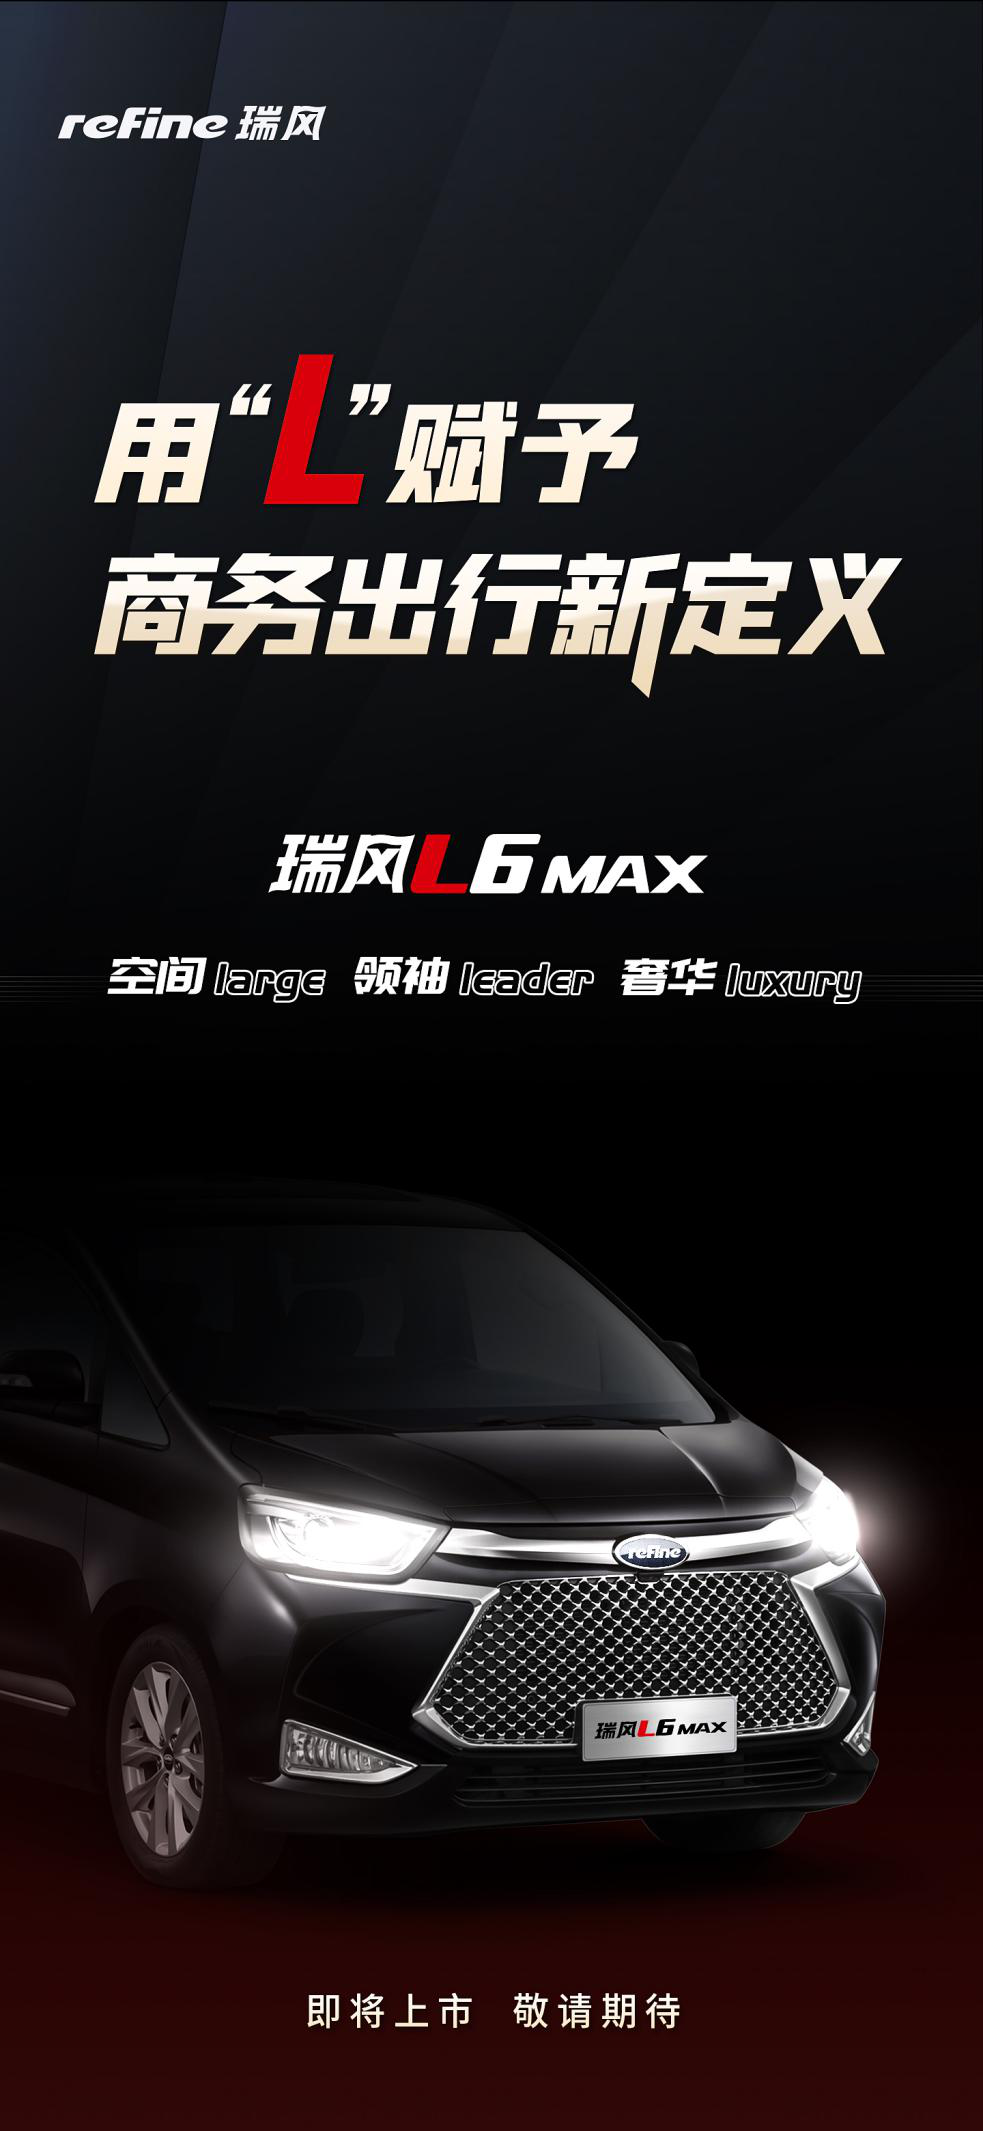 据悉，“瑞风”品牌也将正式聚焦江淮商务车，并将推出旗舰MPV--瑞风L6 MAX，打造全新的L系列并与现有的M系列形成区隔，共同满足细分市场的不同需求。